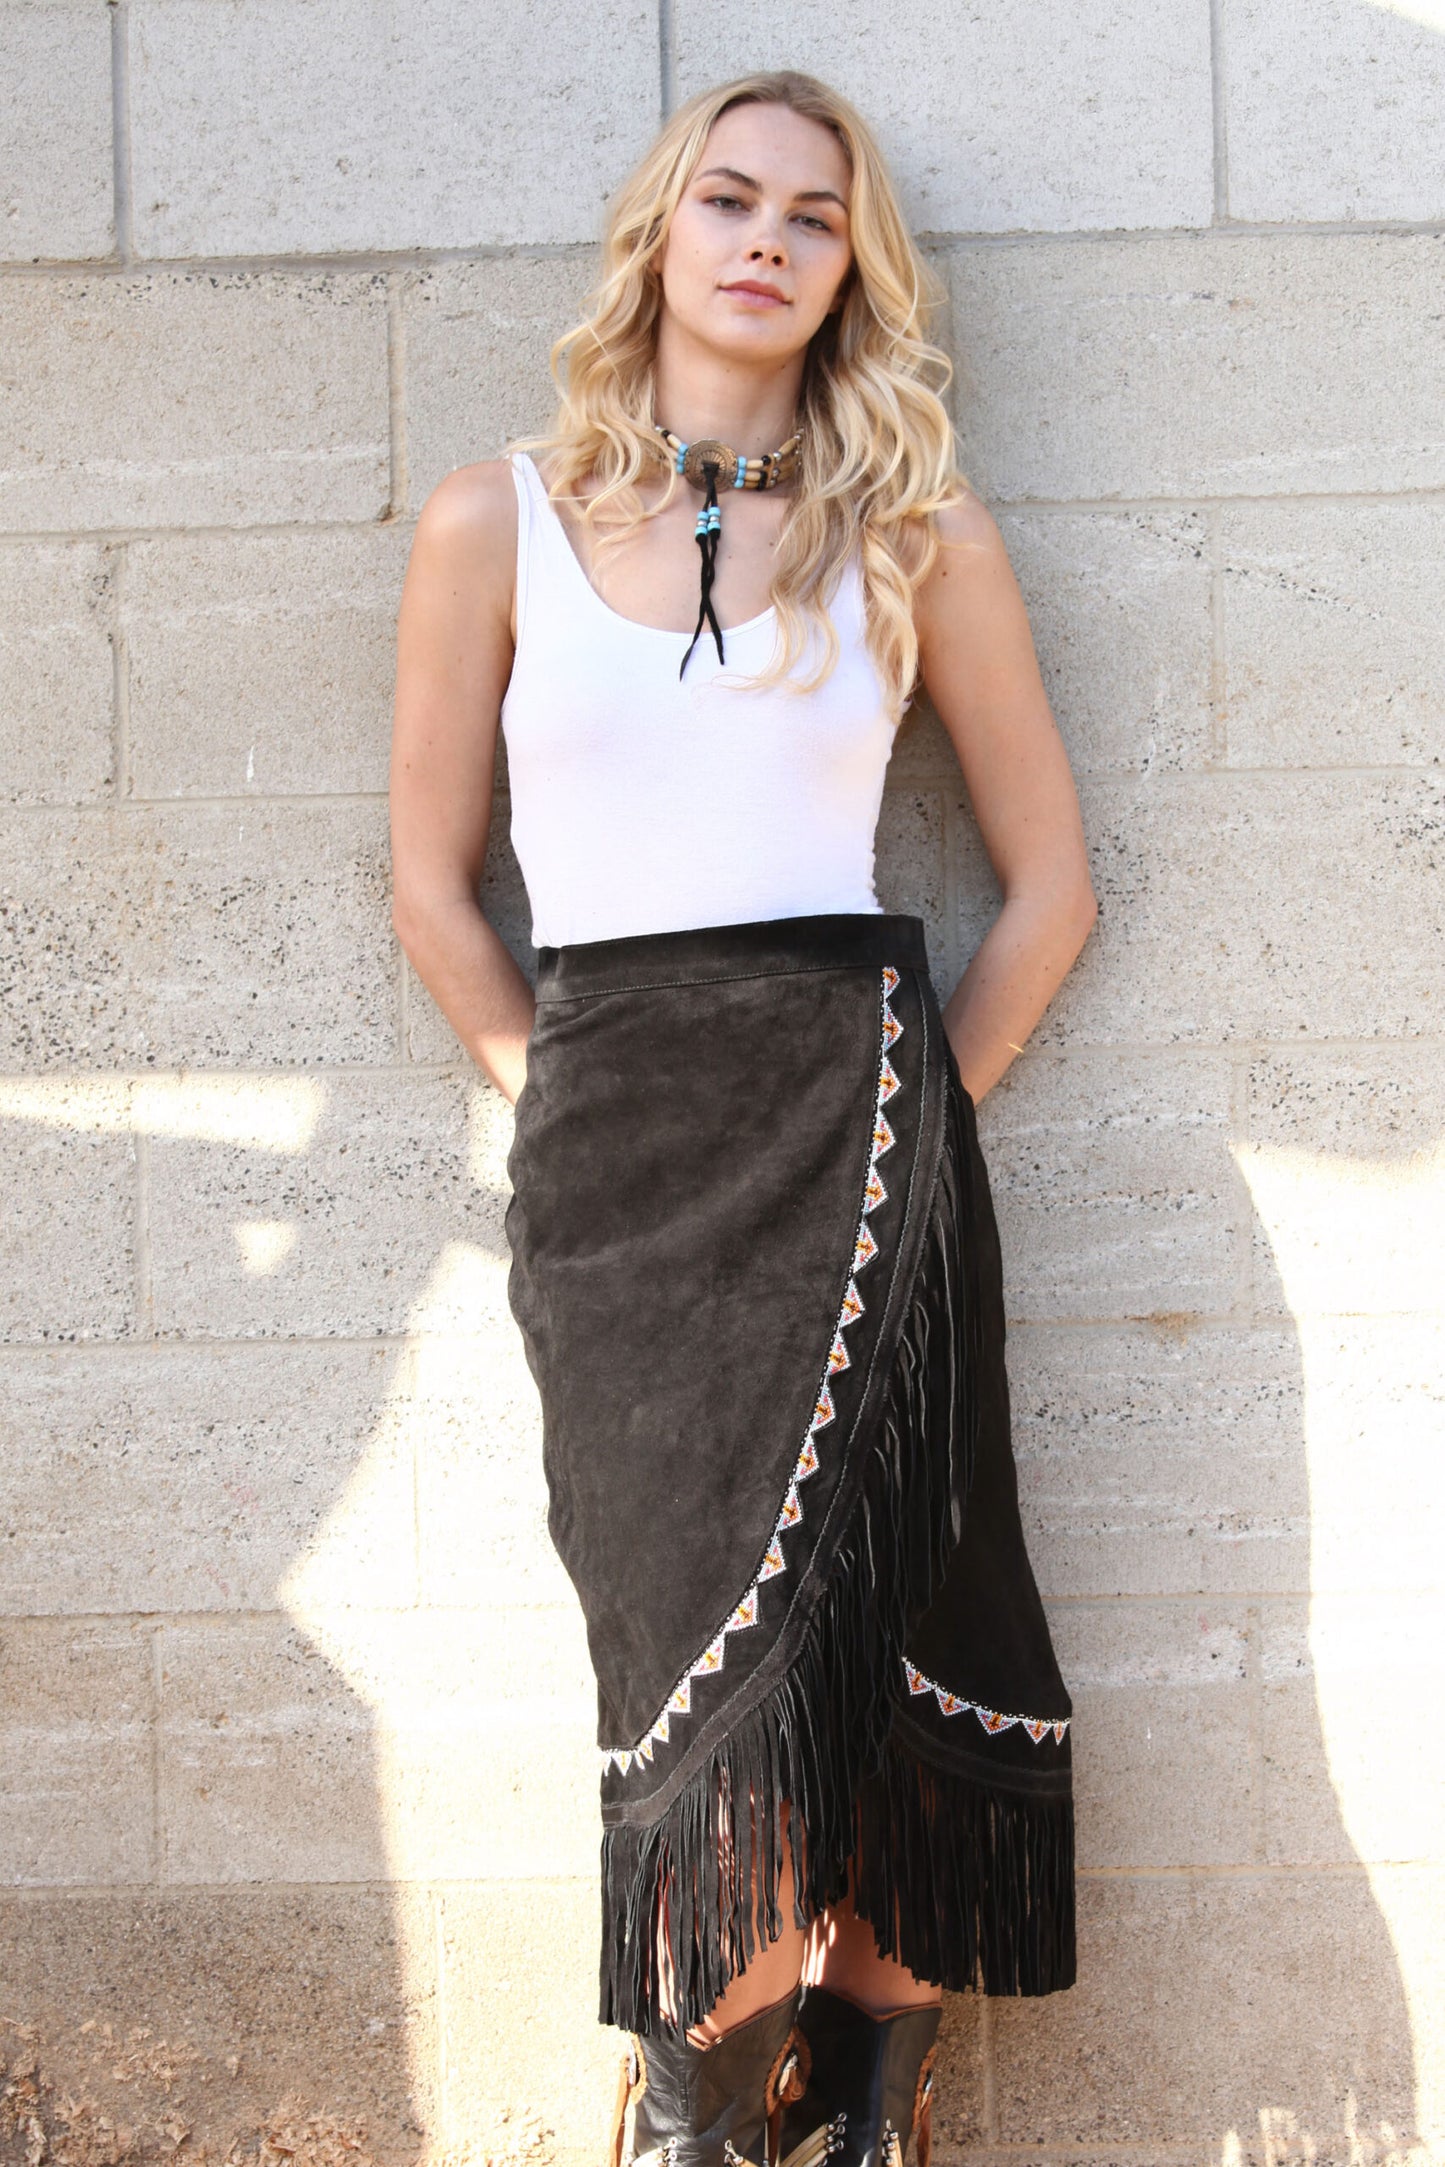 Skirt - Yuma Kobler Leather beaded skirt